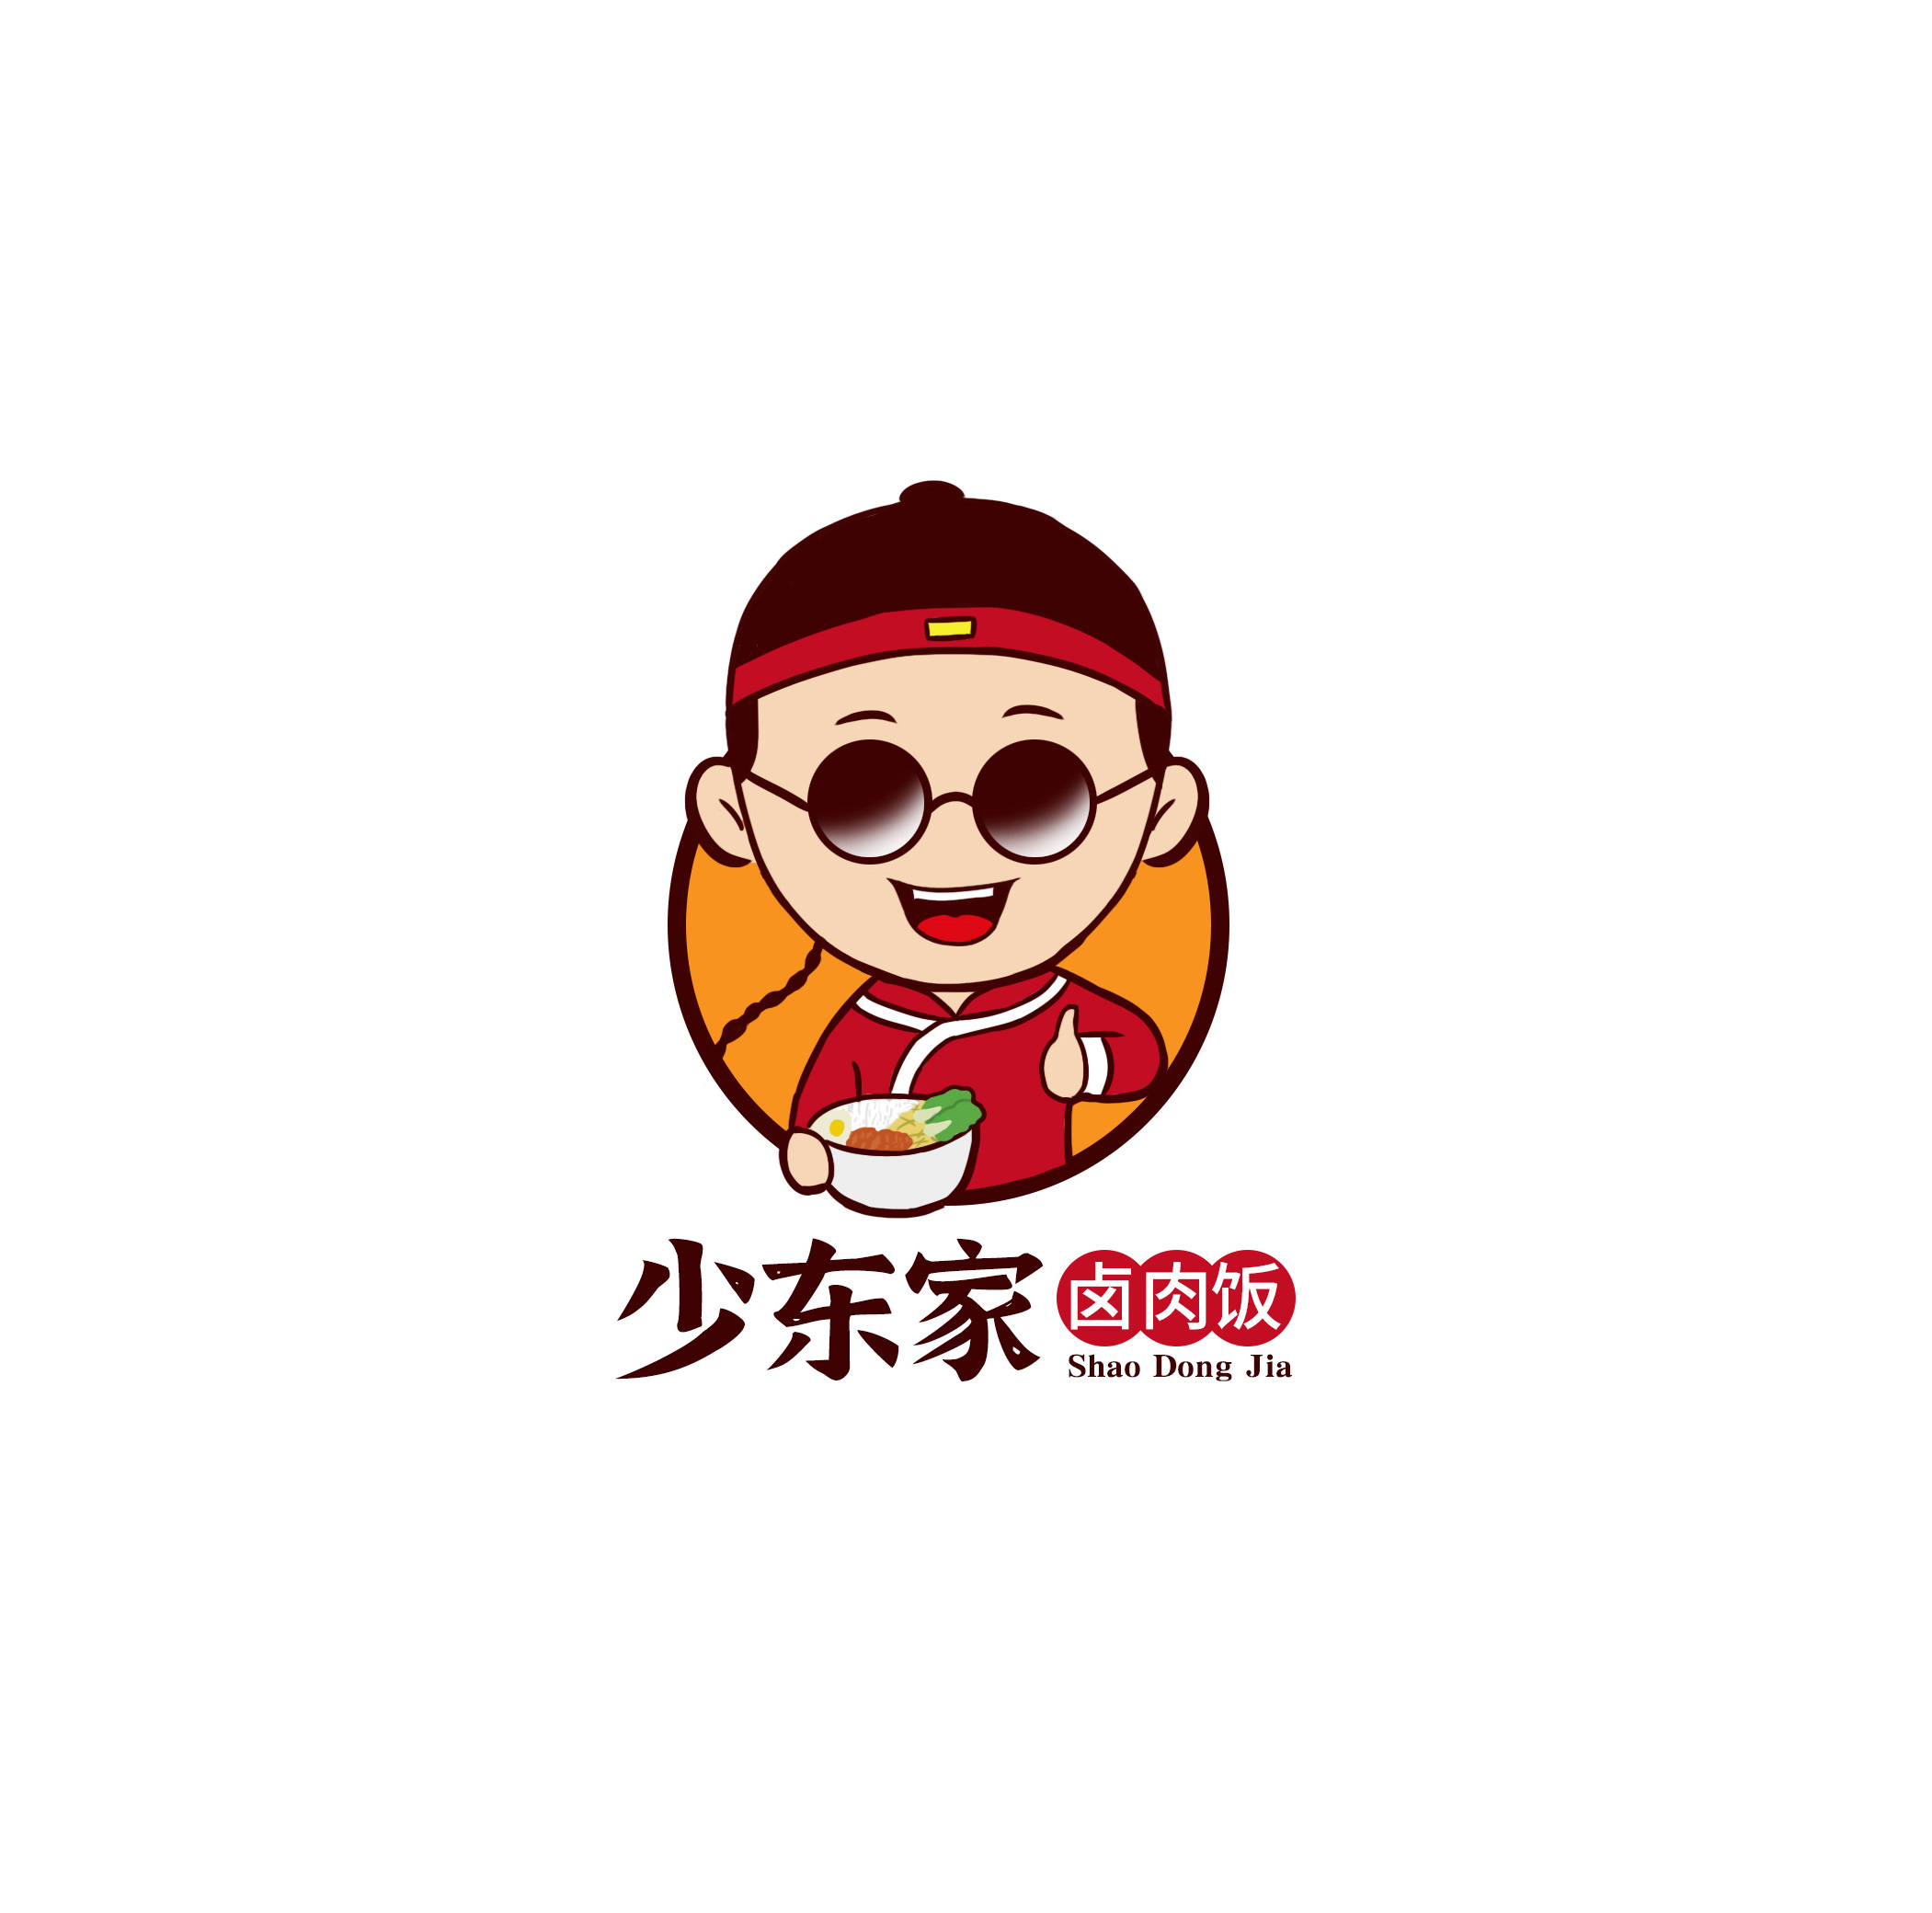 电商主图 )标签logo餐饮卡通作品信息创作时间2021/01/25收录收藏夹